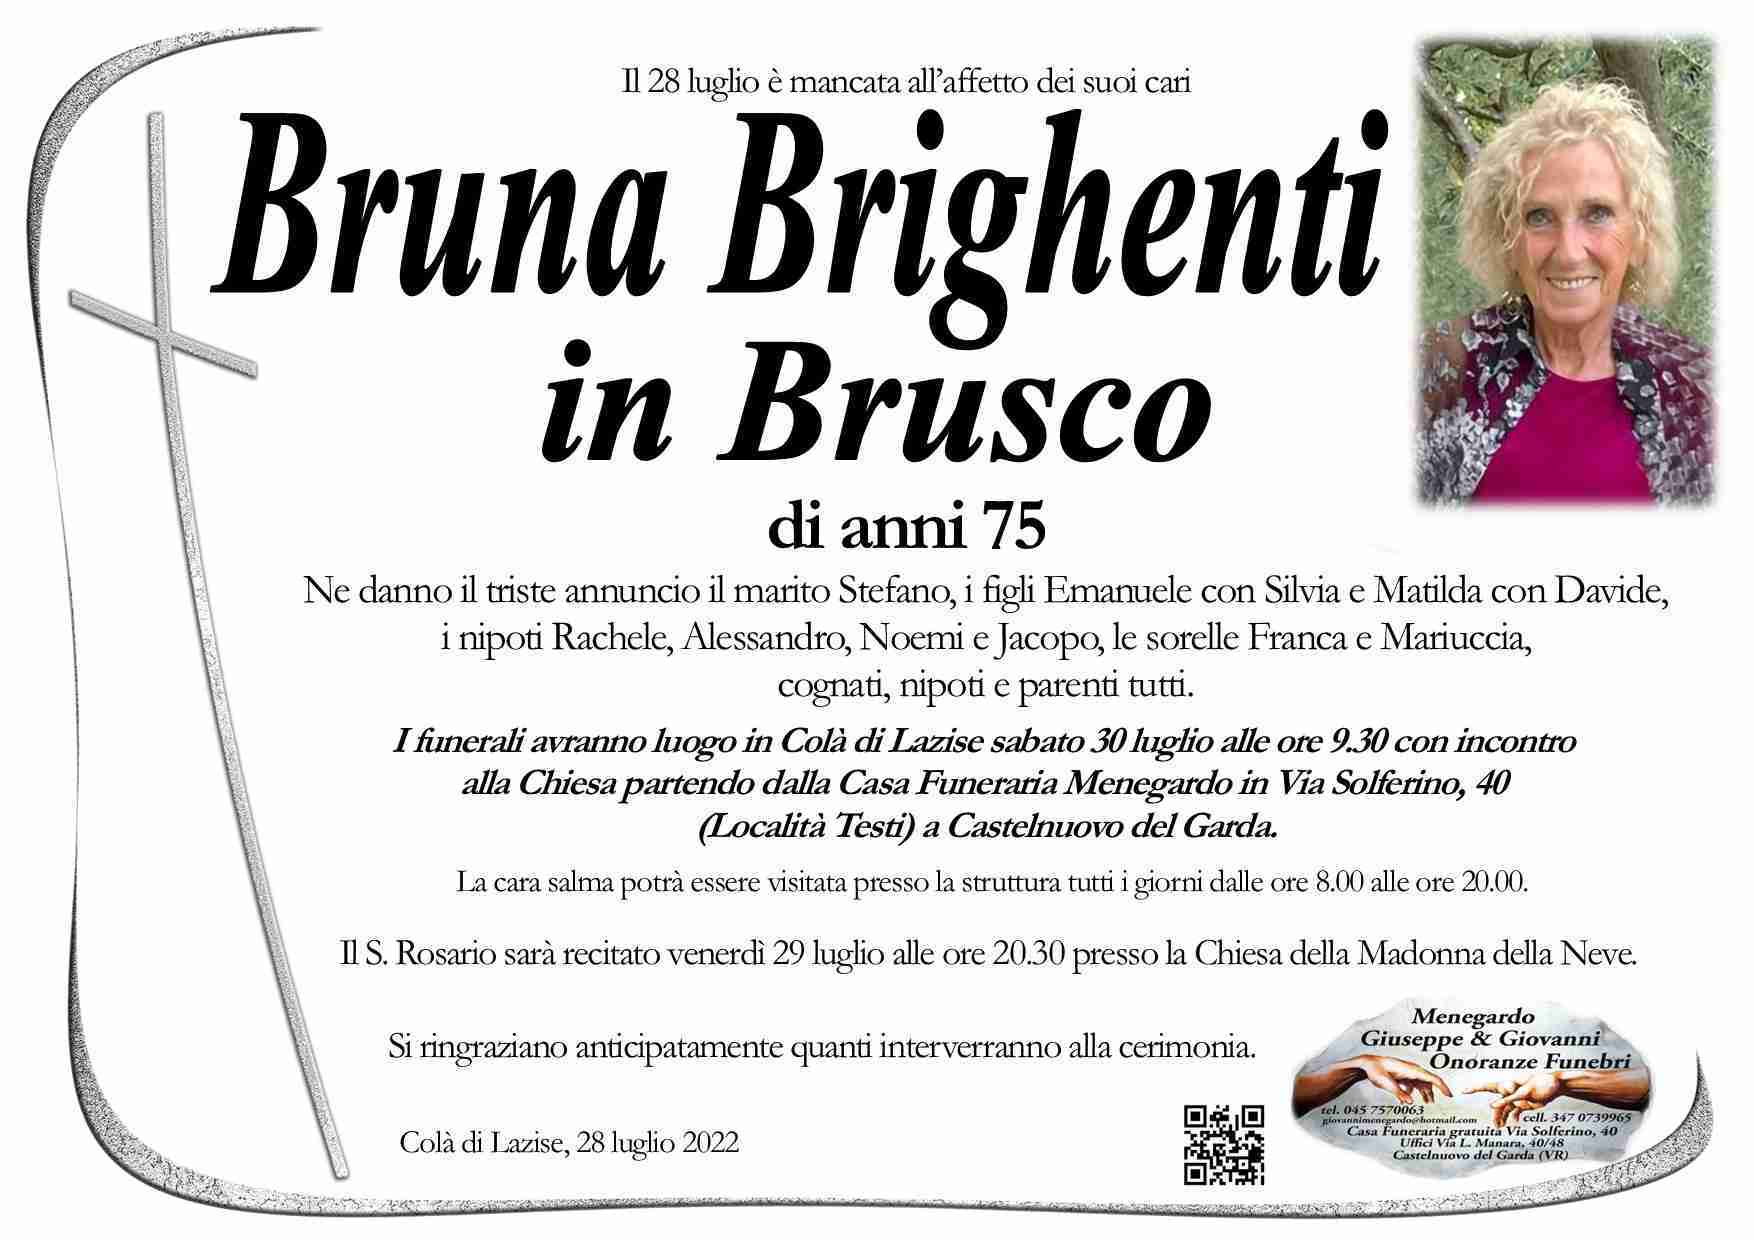 Bruna Brighenti